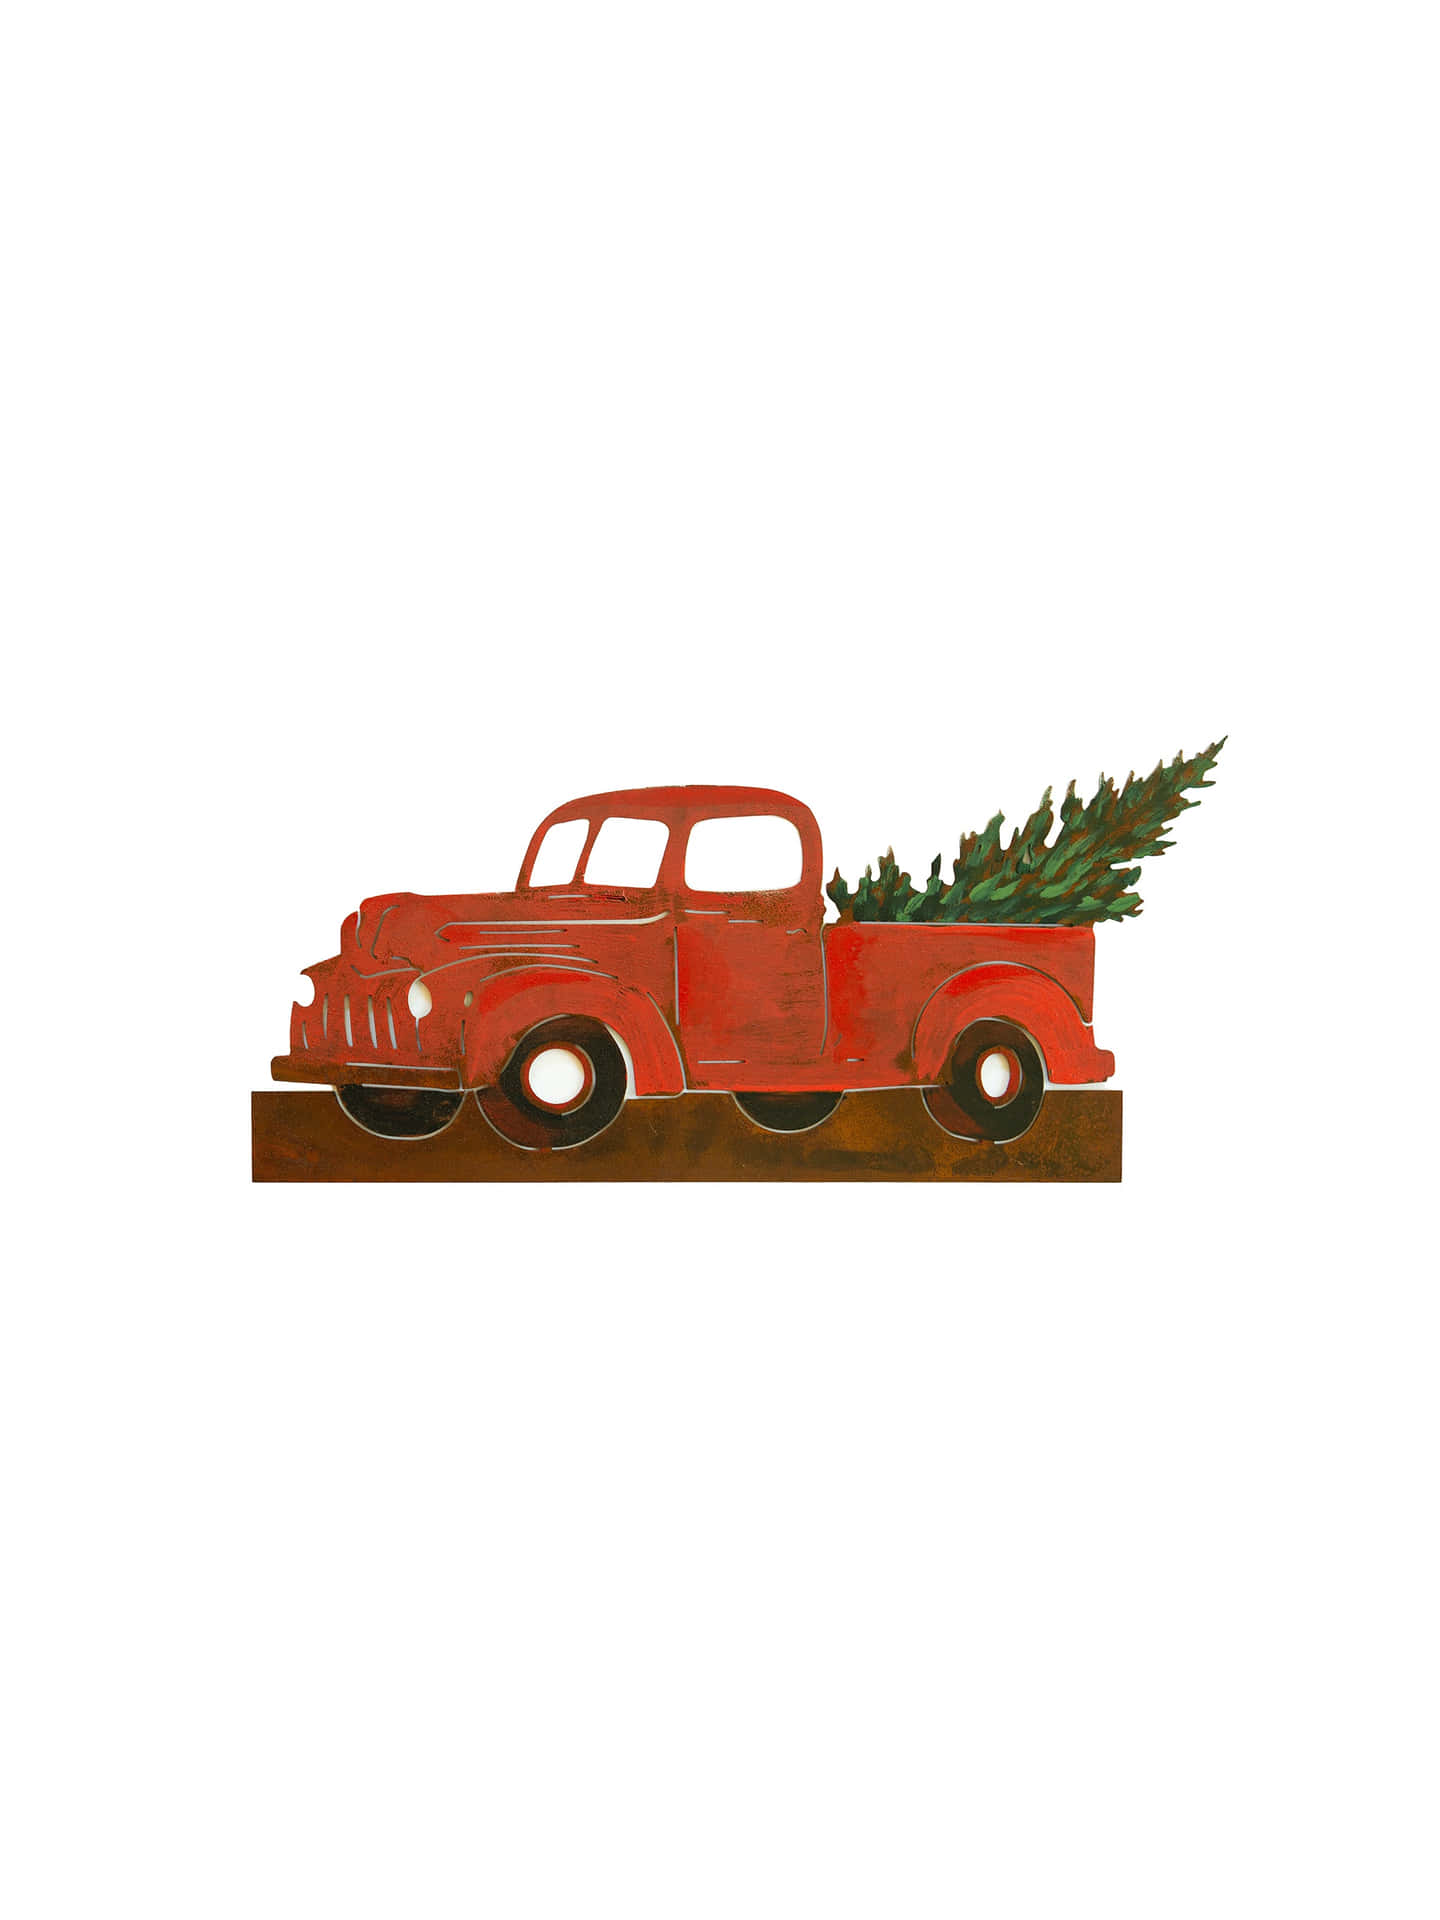 Fejr juleferien med denne vintage lastbil julebaggrund! Wallpaper